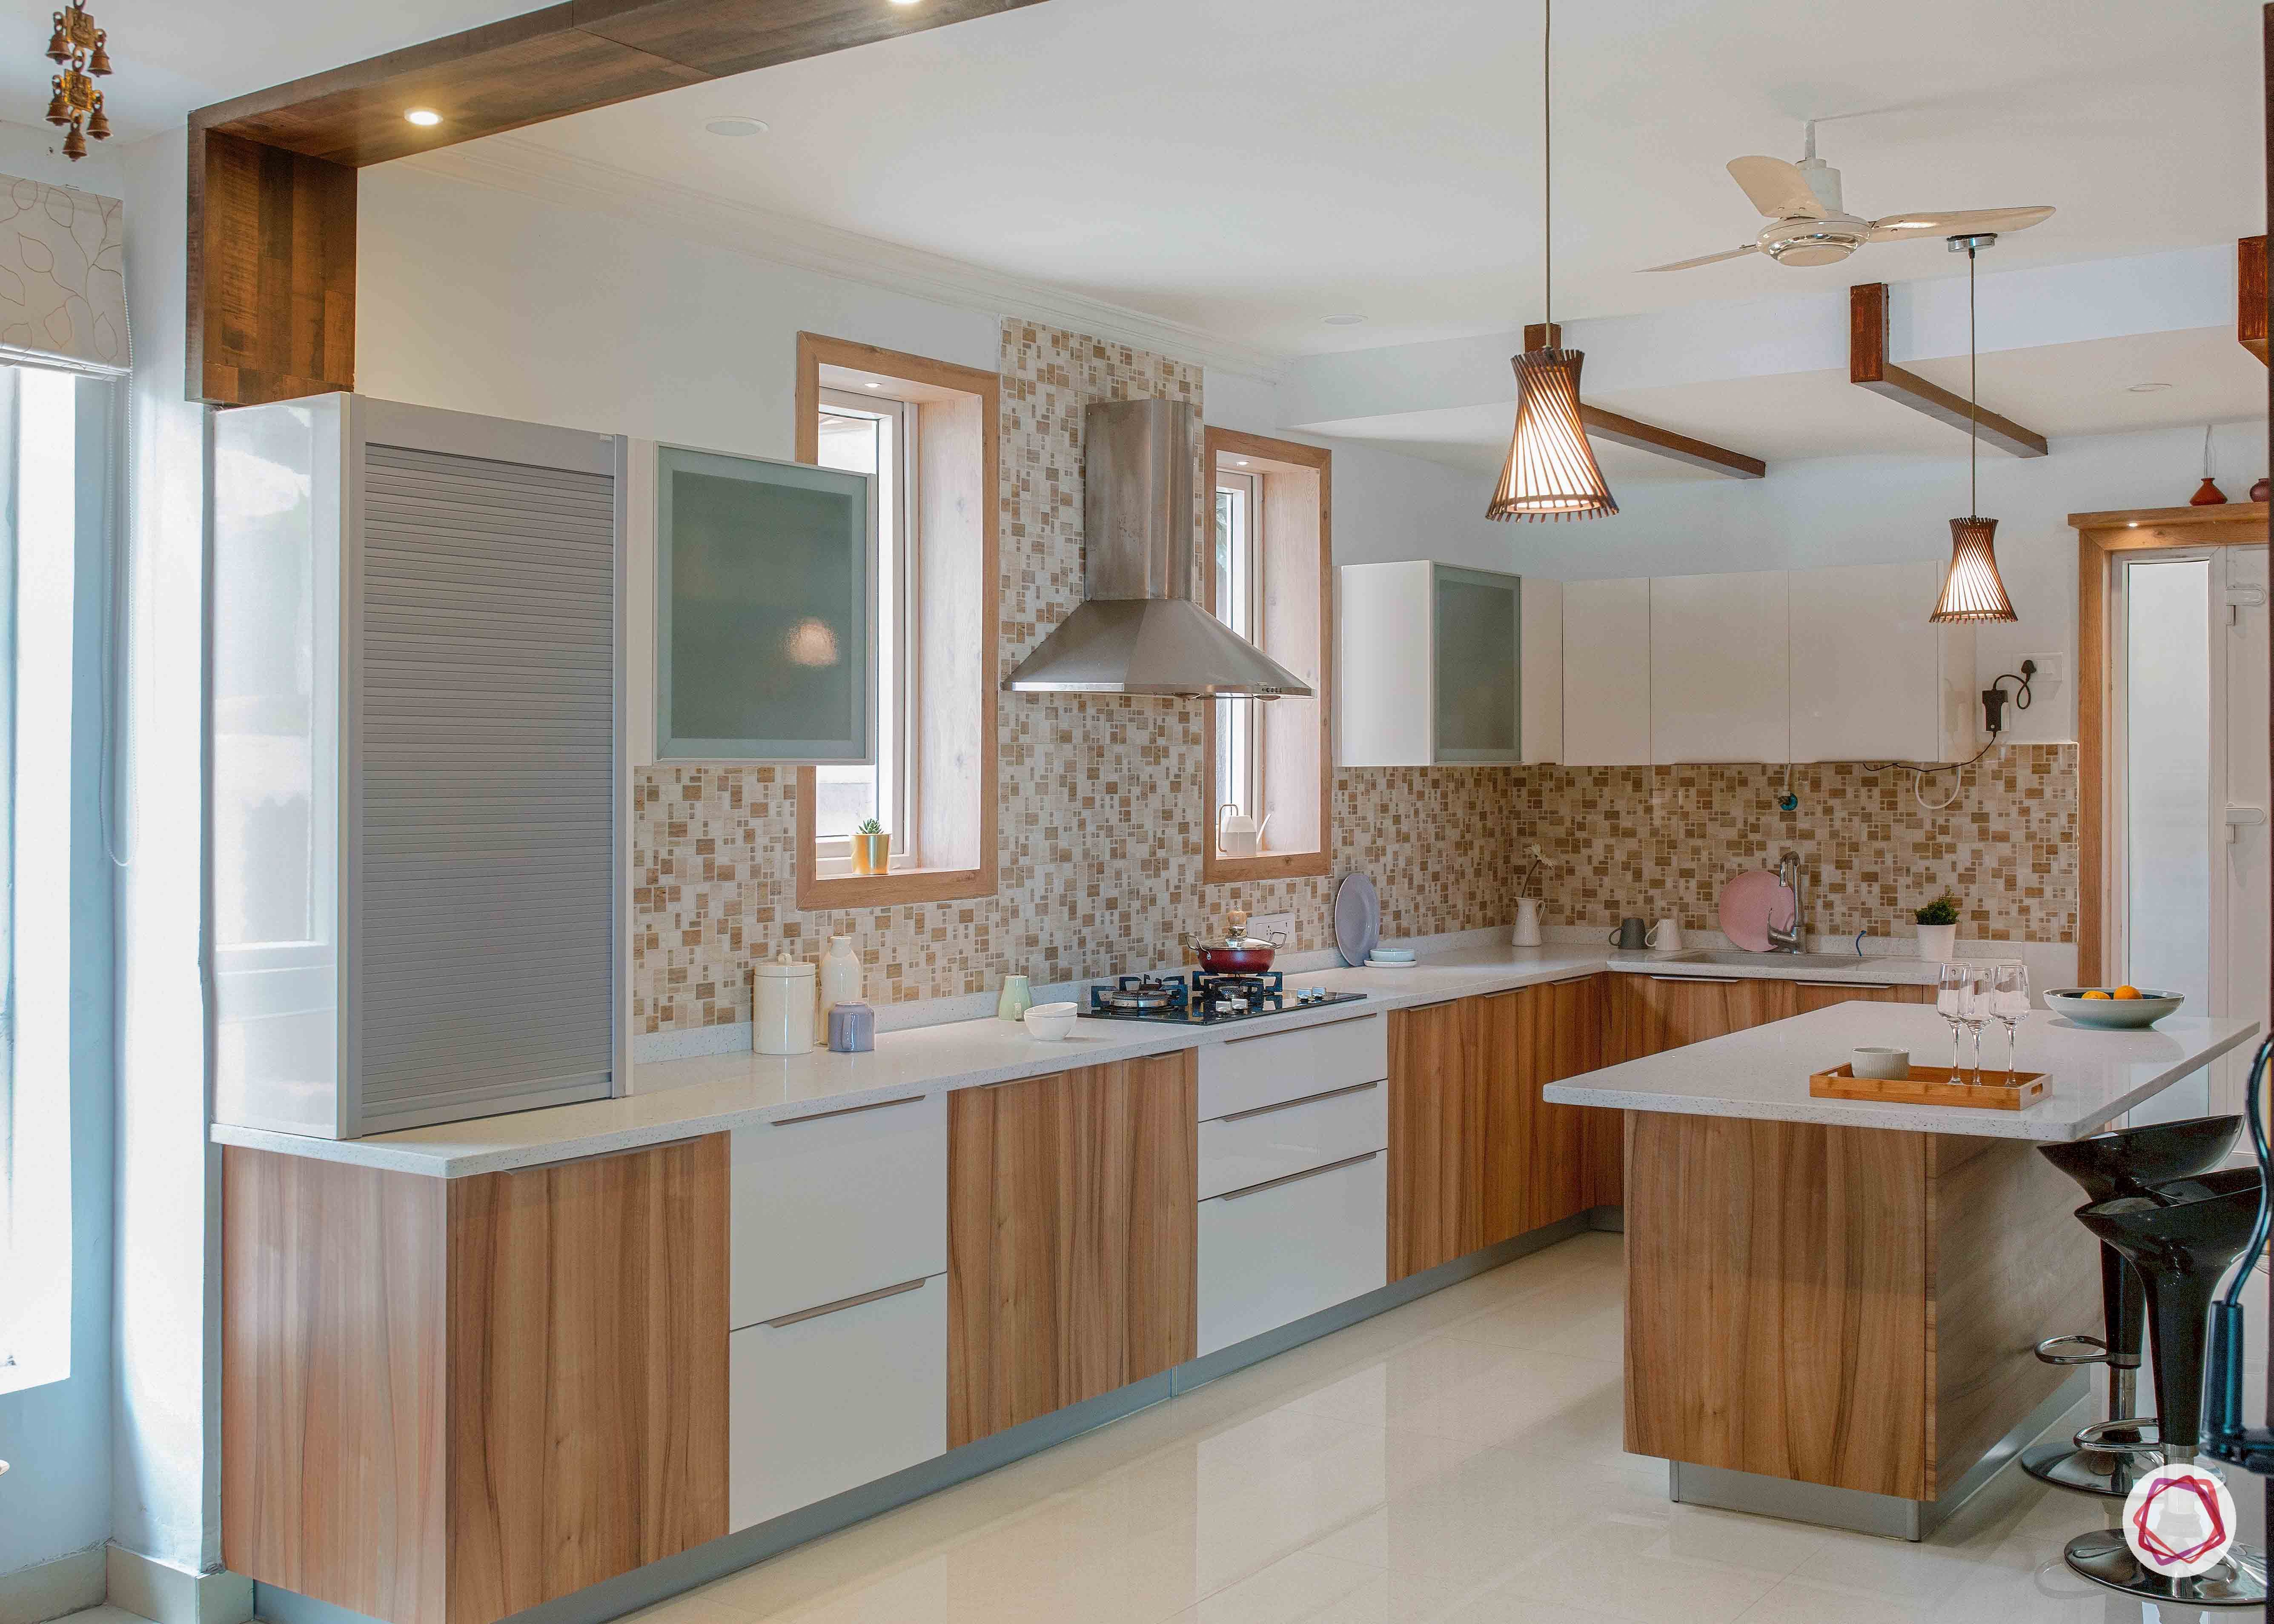 kitchen-for-elderly-wooden-tile-flooring